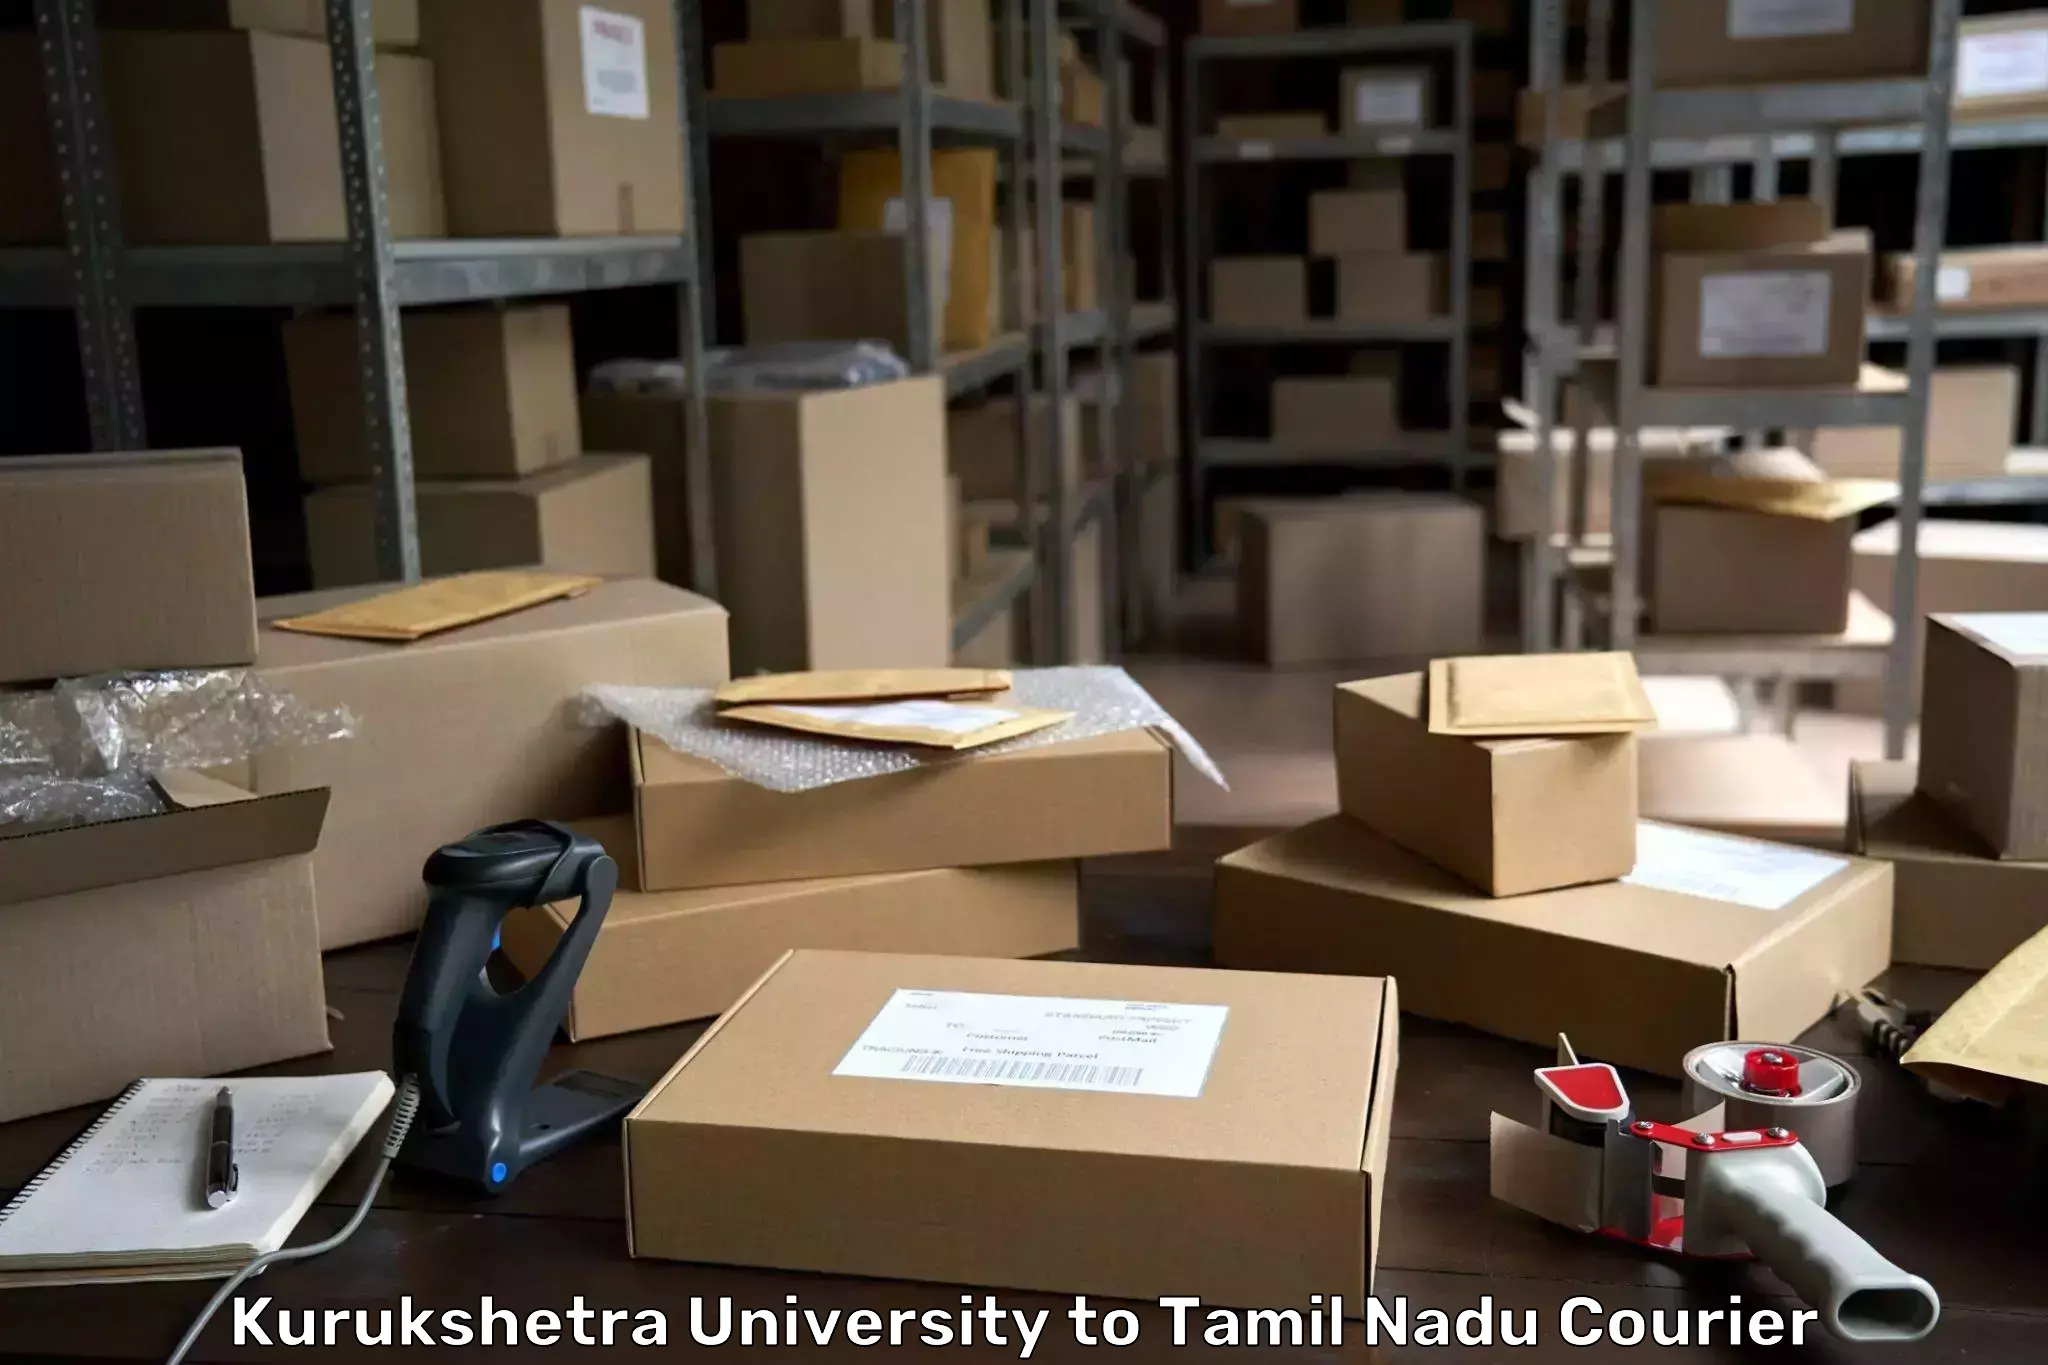 Efficient courier operations Kurukshetra University to Thiruvadanai